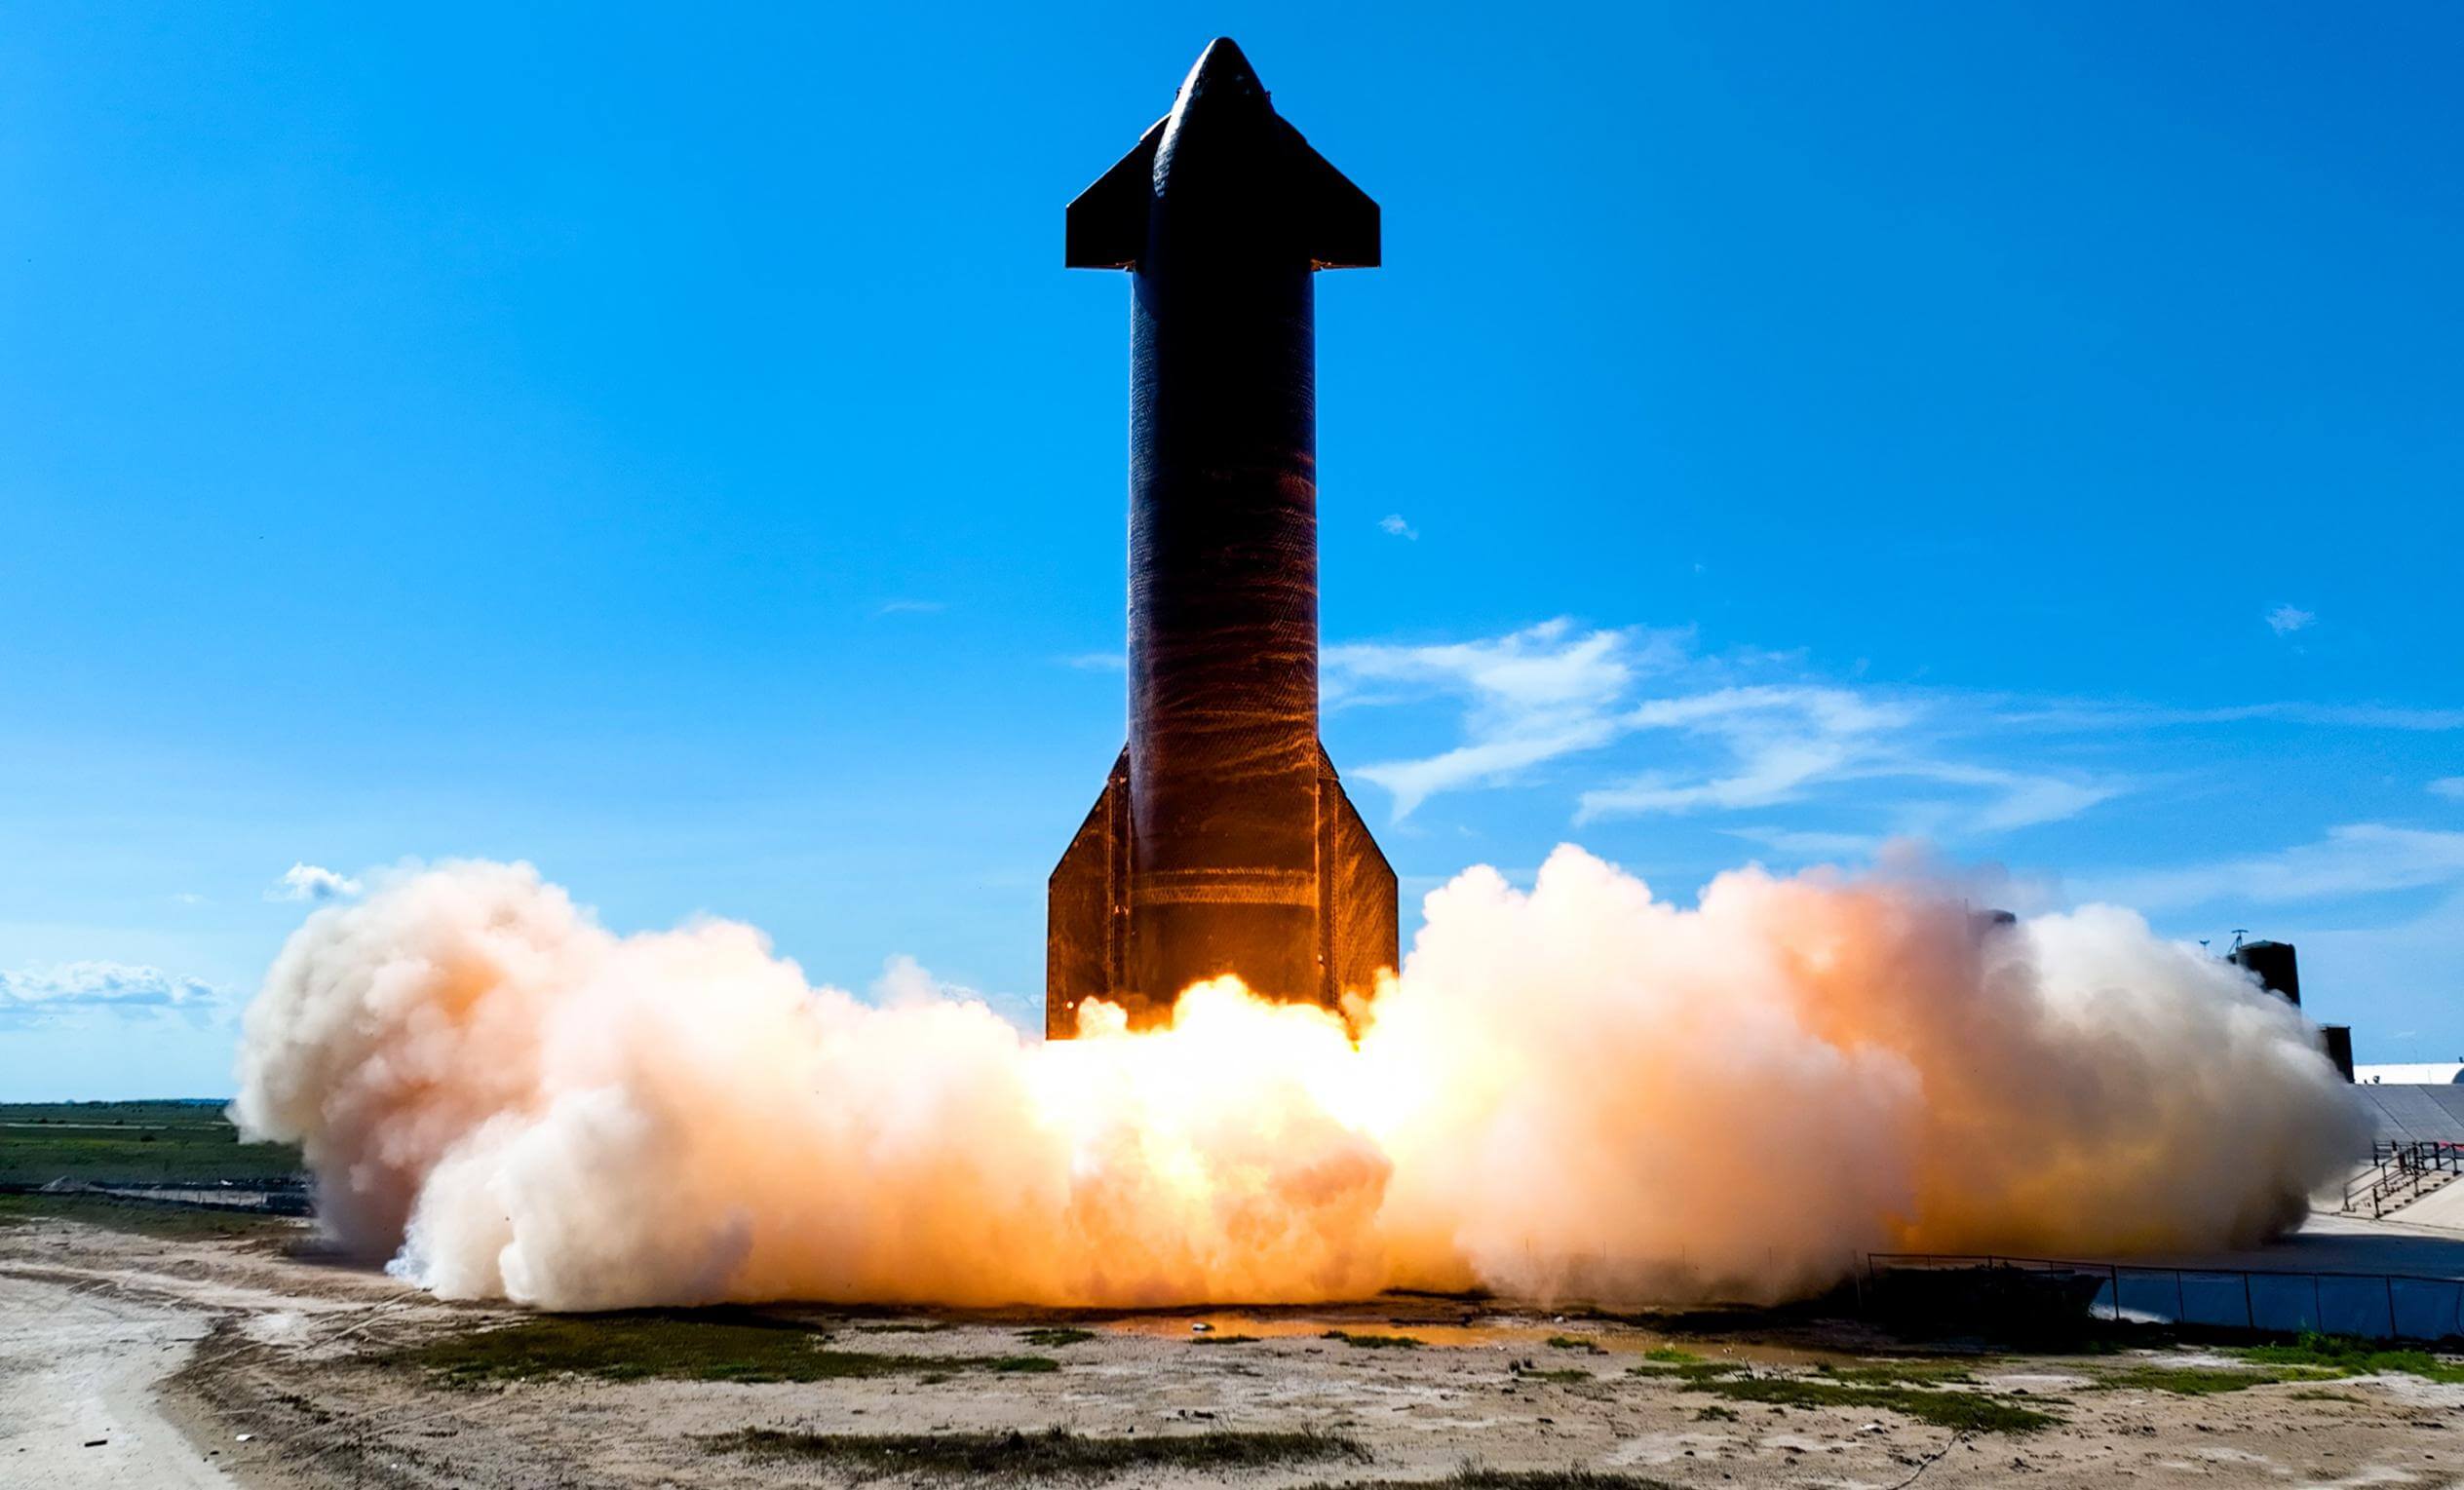 Prototaip SpaceX Starship menyalakan enam enjin, memulakan tembakan berus besar